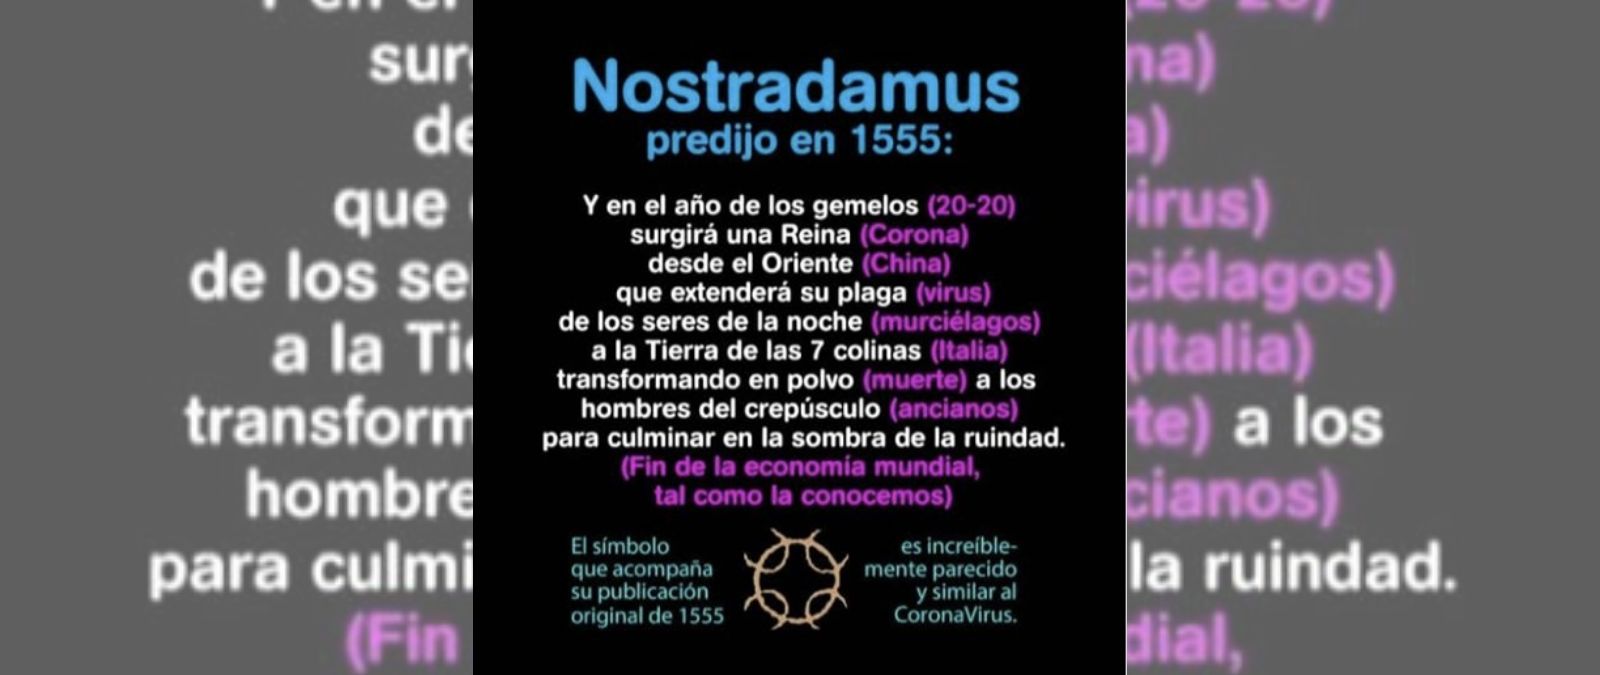 ¡Conoce la verdad! ¿Nostradamus realmente predijo el coronavirus para el 2020?